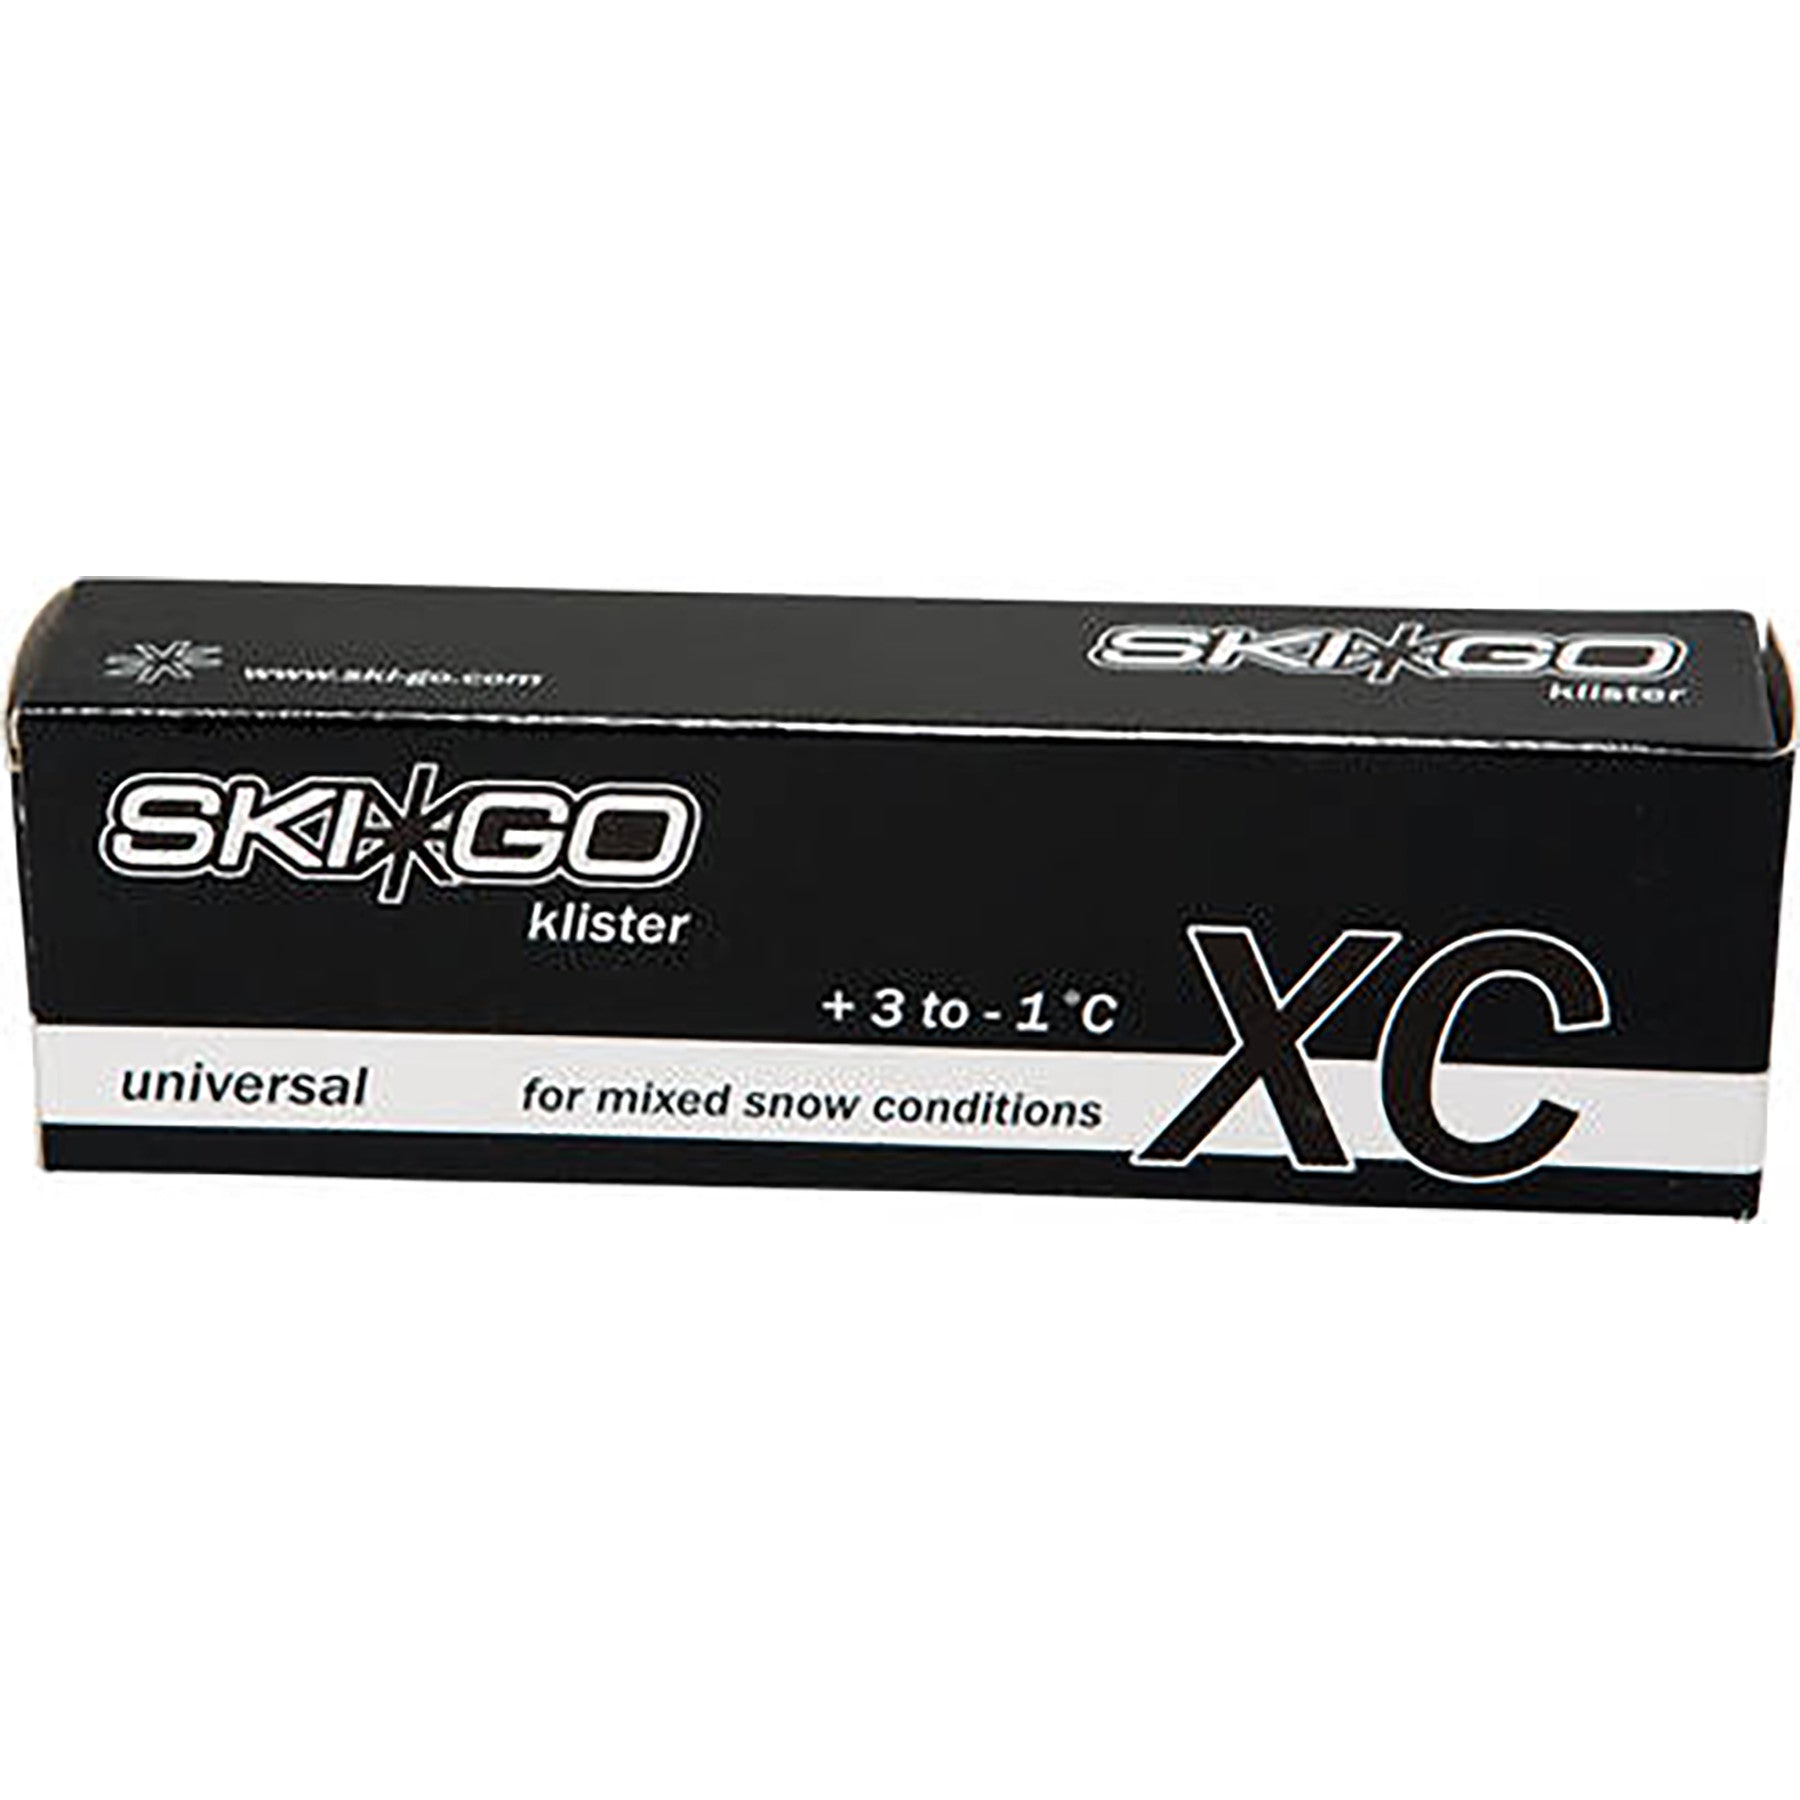 Buy universal SkiGo XC Klister